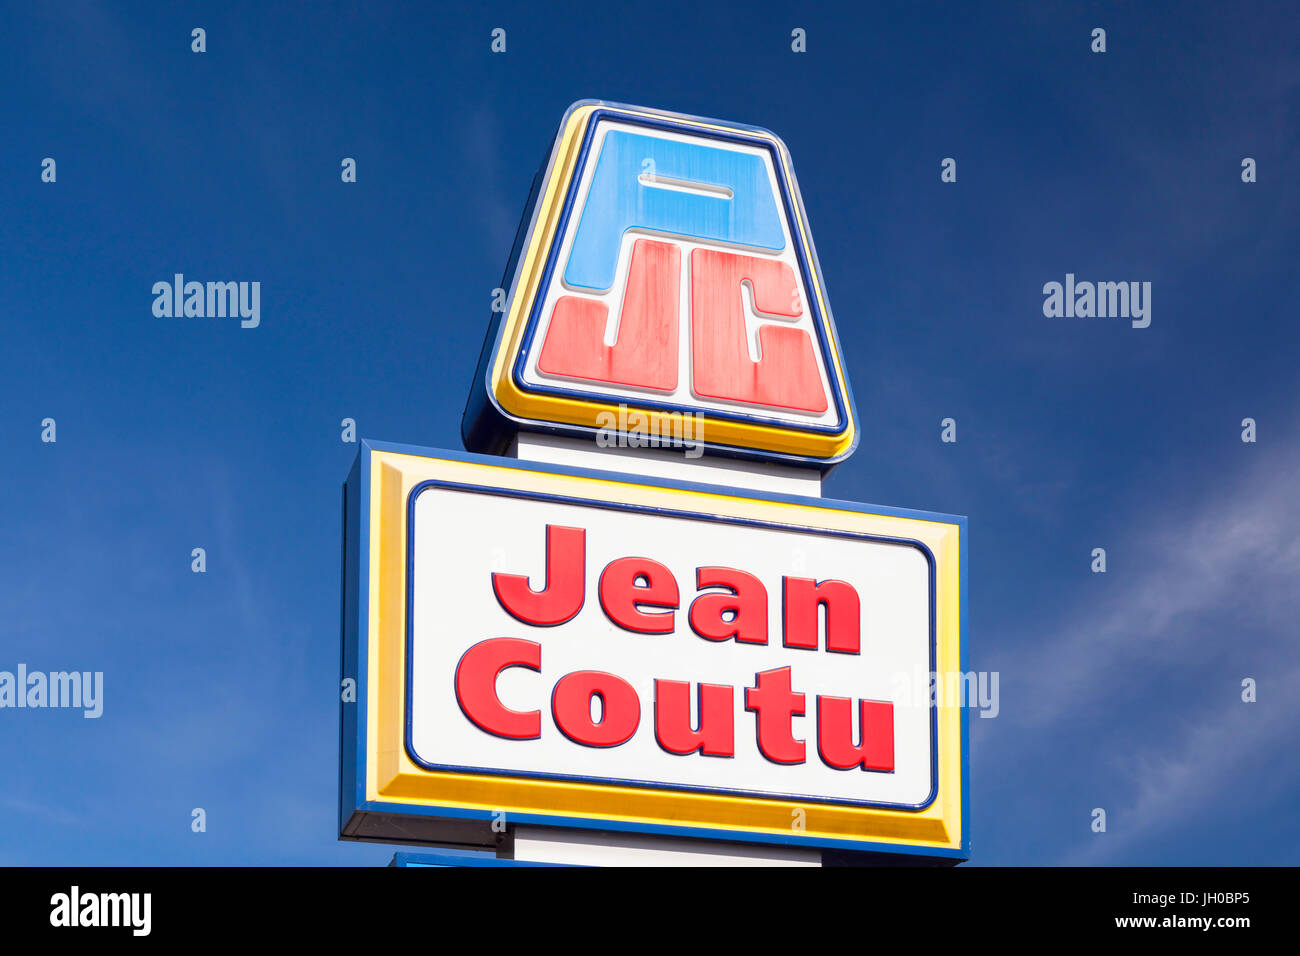 Un PJC Jean Coutu ou signe. Jean Coutu est une chaîne de pharmacie dans toute la province de Québec. Banque D'Images